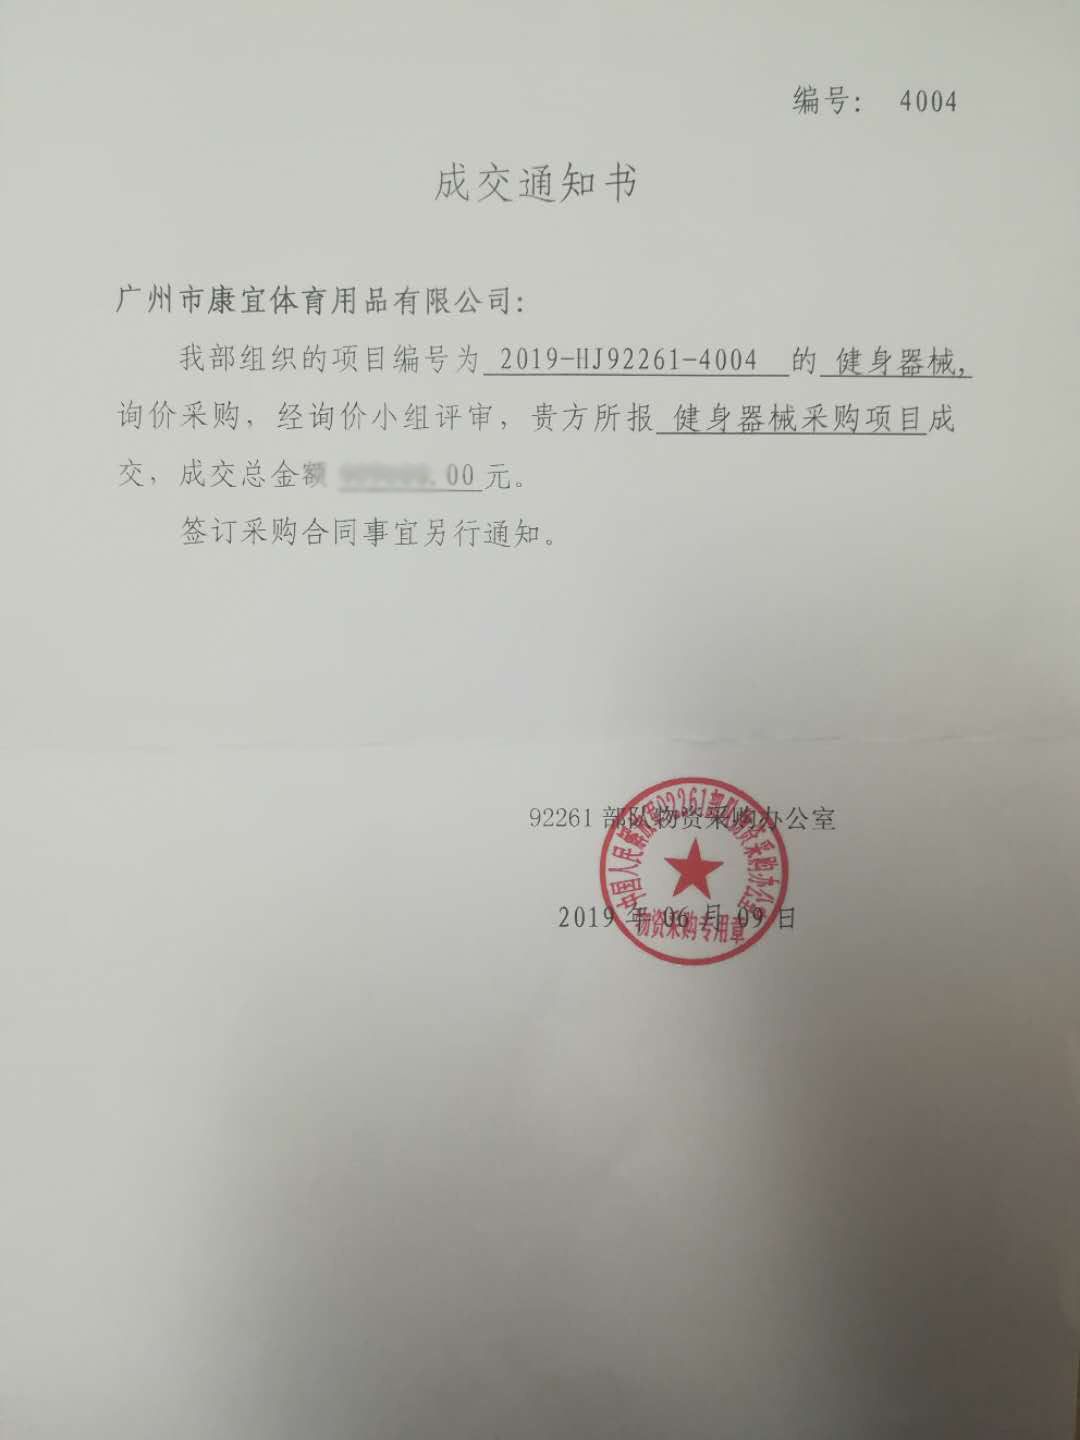 热烈祝贺我公司一举中标中国人民解放军健身器材项目